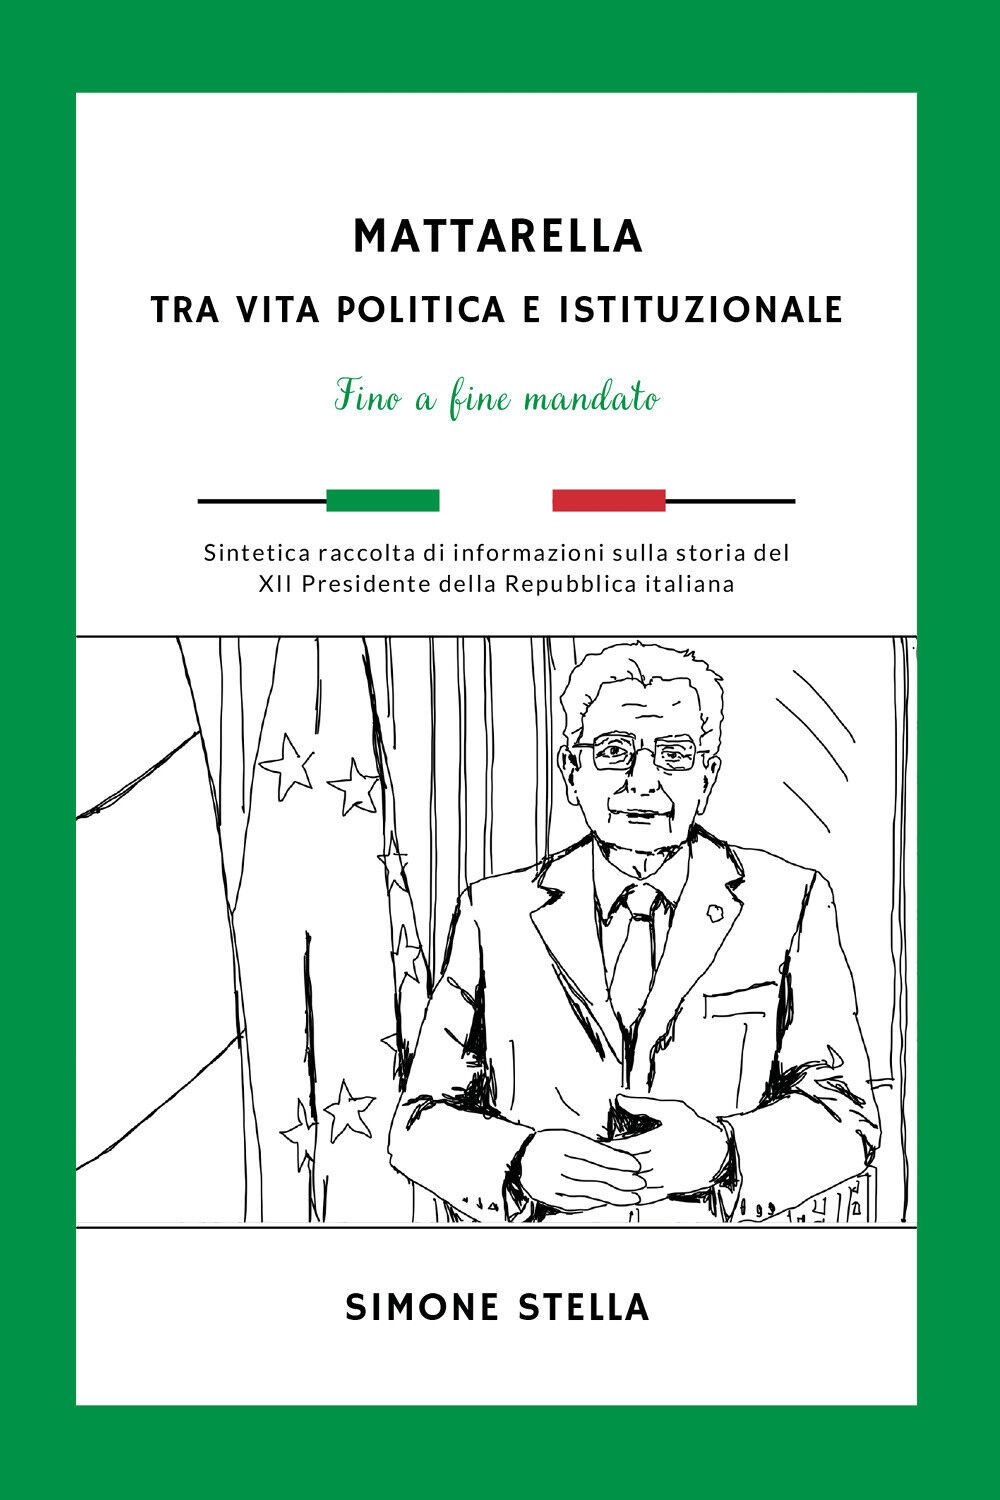 Mattarella: tra vita politica e istituzionale di Simone Stella,  2022,  Youcanpr